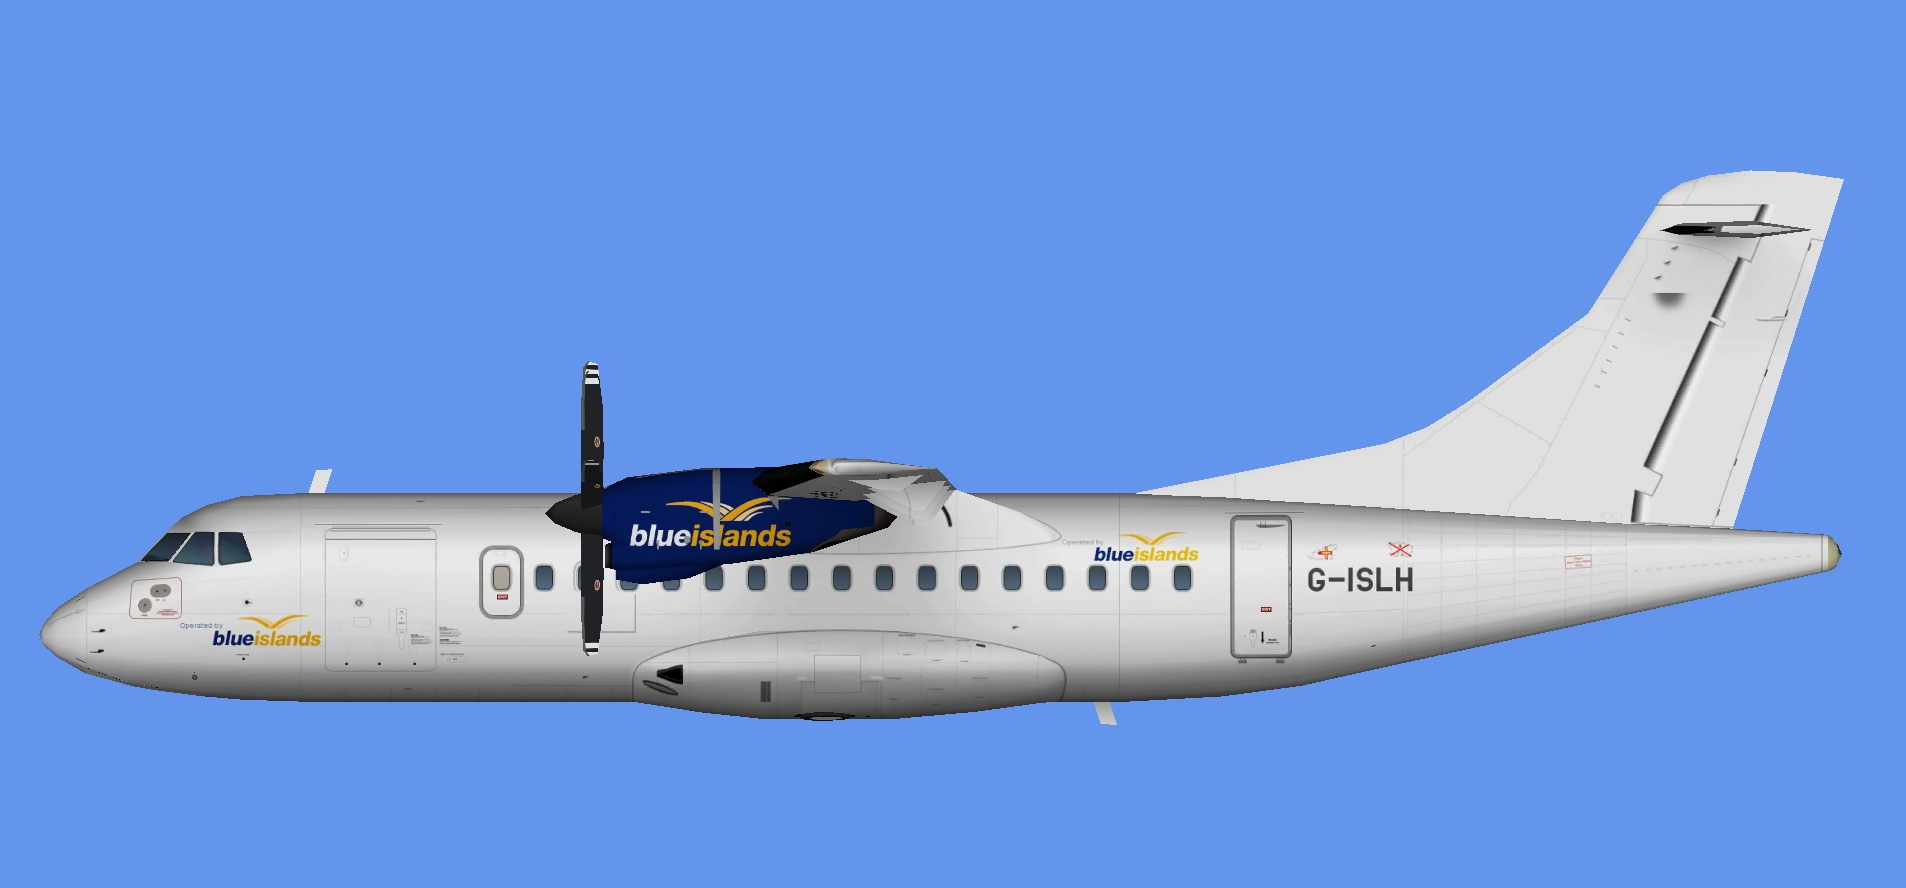 Blue Islands ATR 42-300